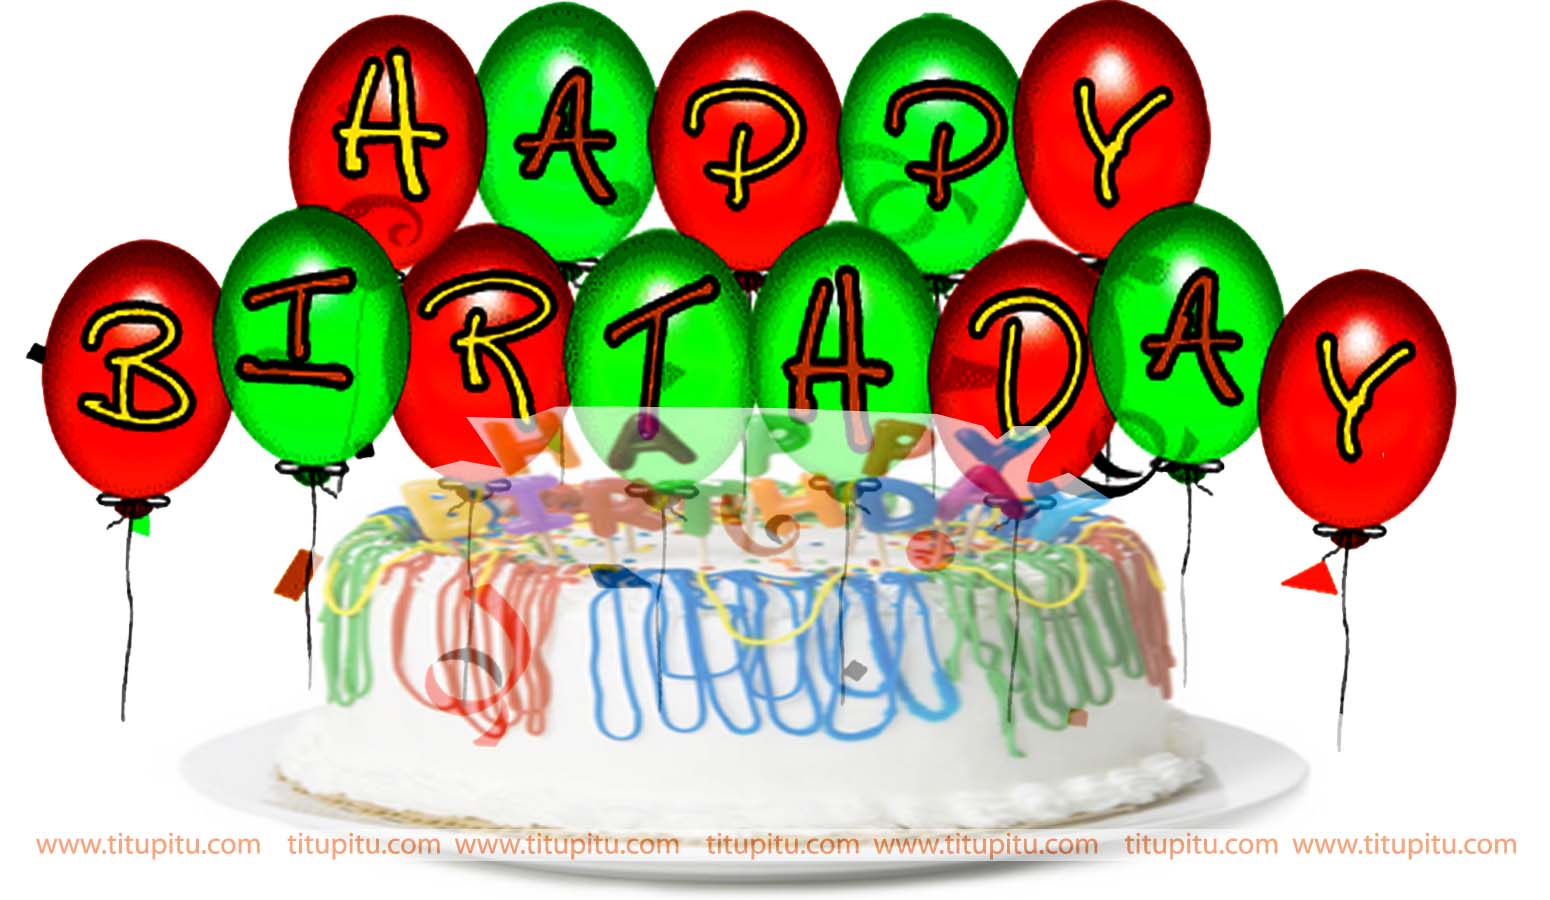 恋人のための誕生日の願い壁紙,ケーキ飾る供給,ケーキ,お誕生日,ケーキ飾る,誕生日キャンドル